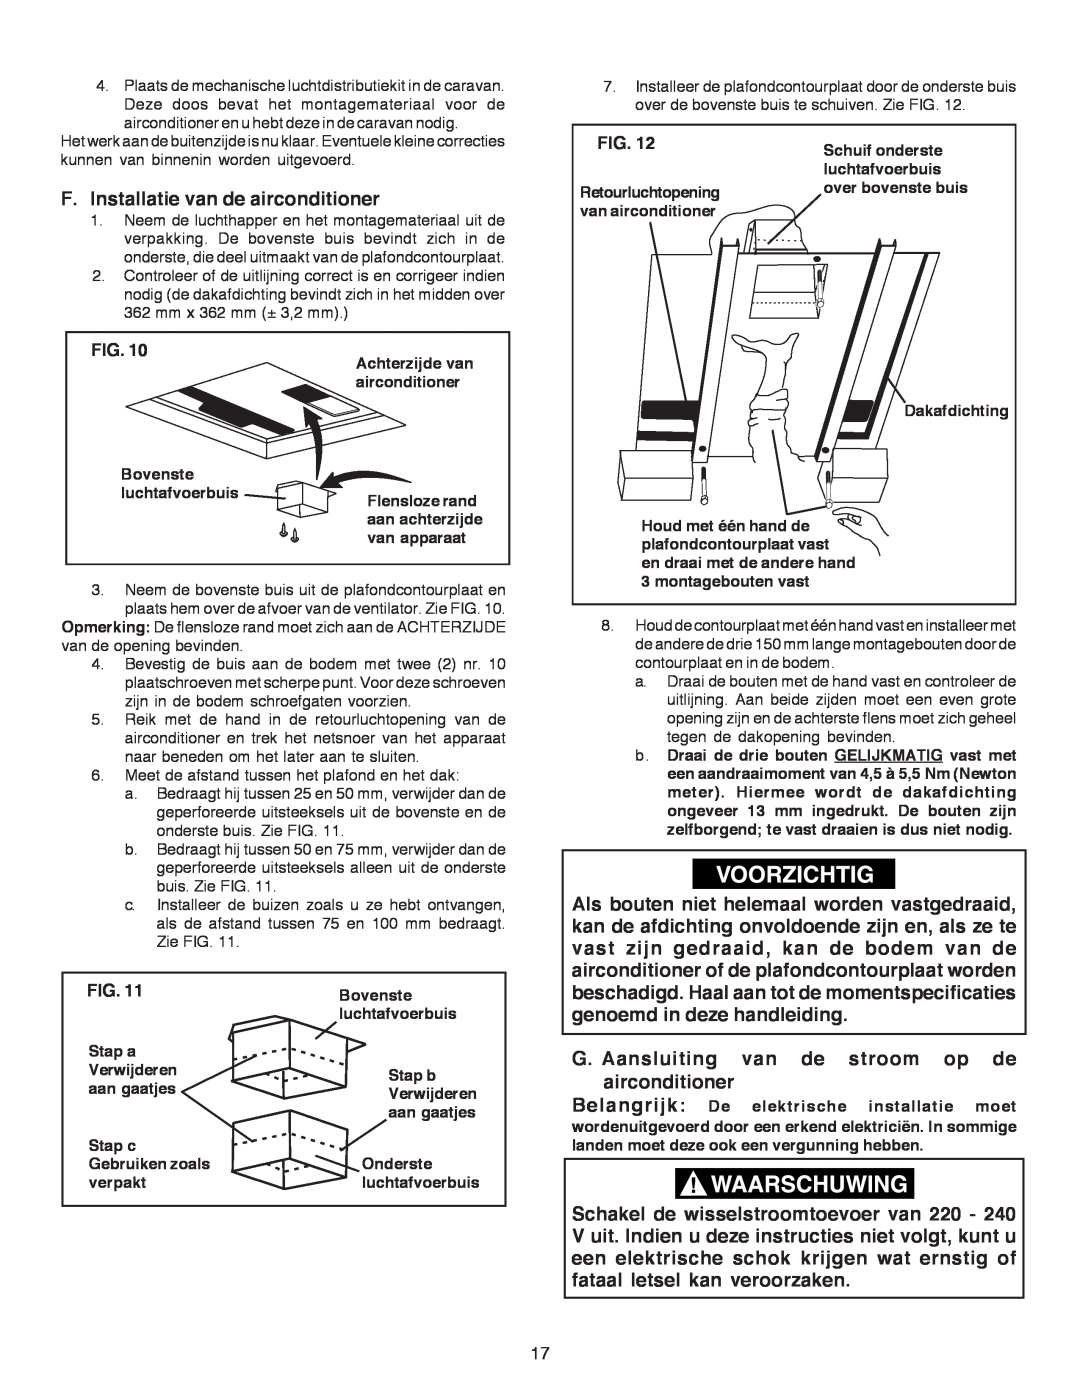 Dometic B3200 manual F.Installatie van de airconditioner, G. Aansluiting van de stroom op de airconditioner, Fig 